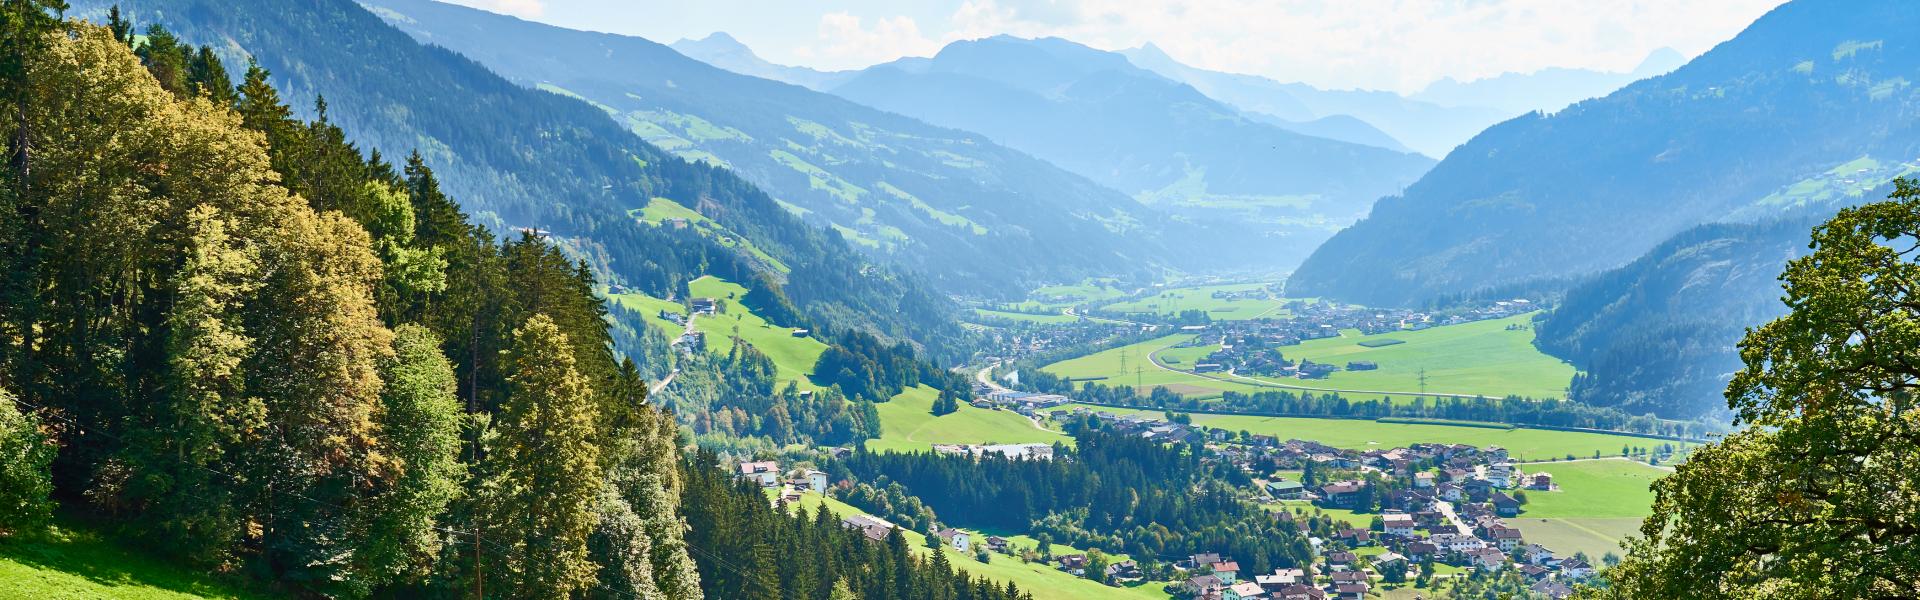 Locations de vacances et chalets dans le Tyrol - Casamundo